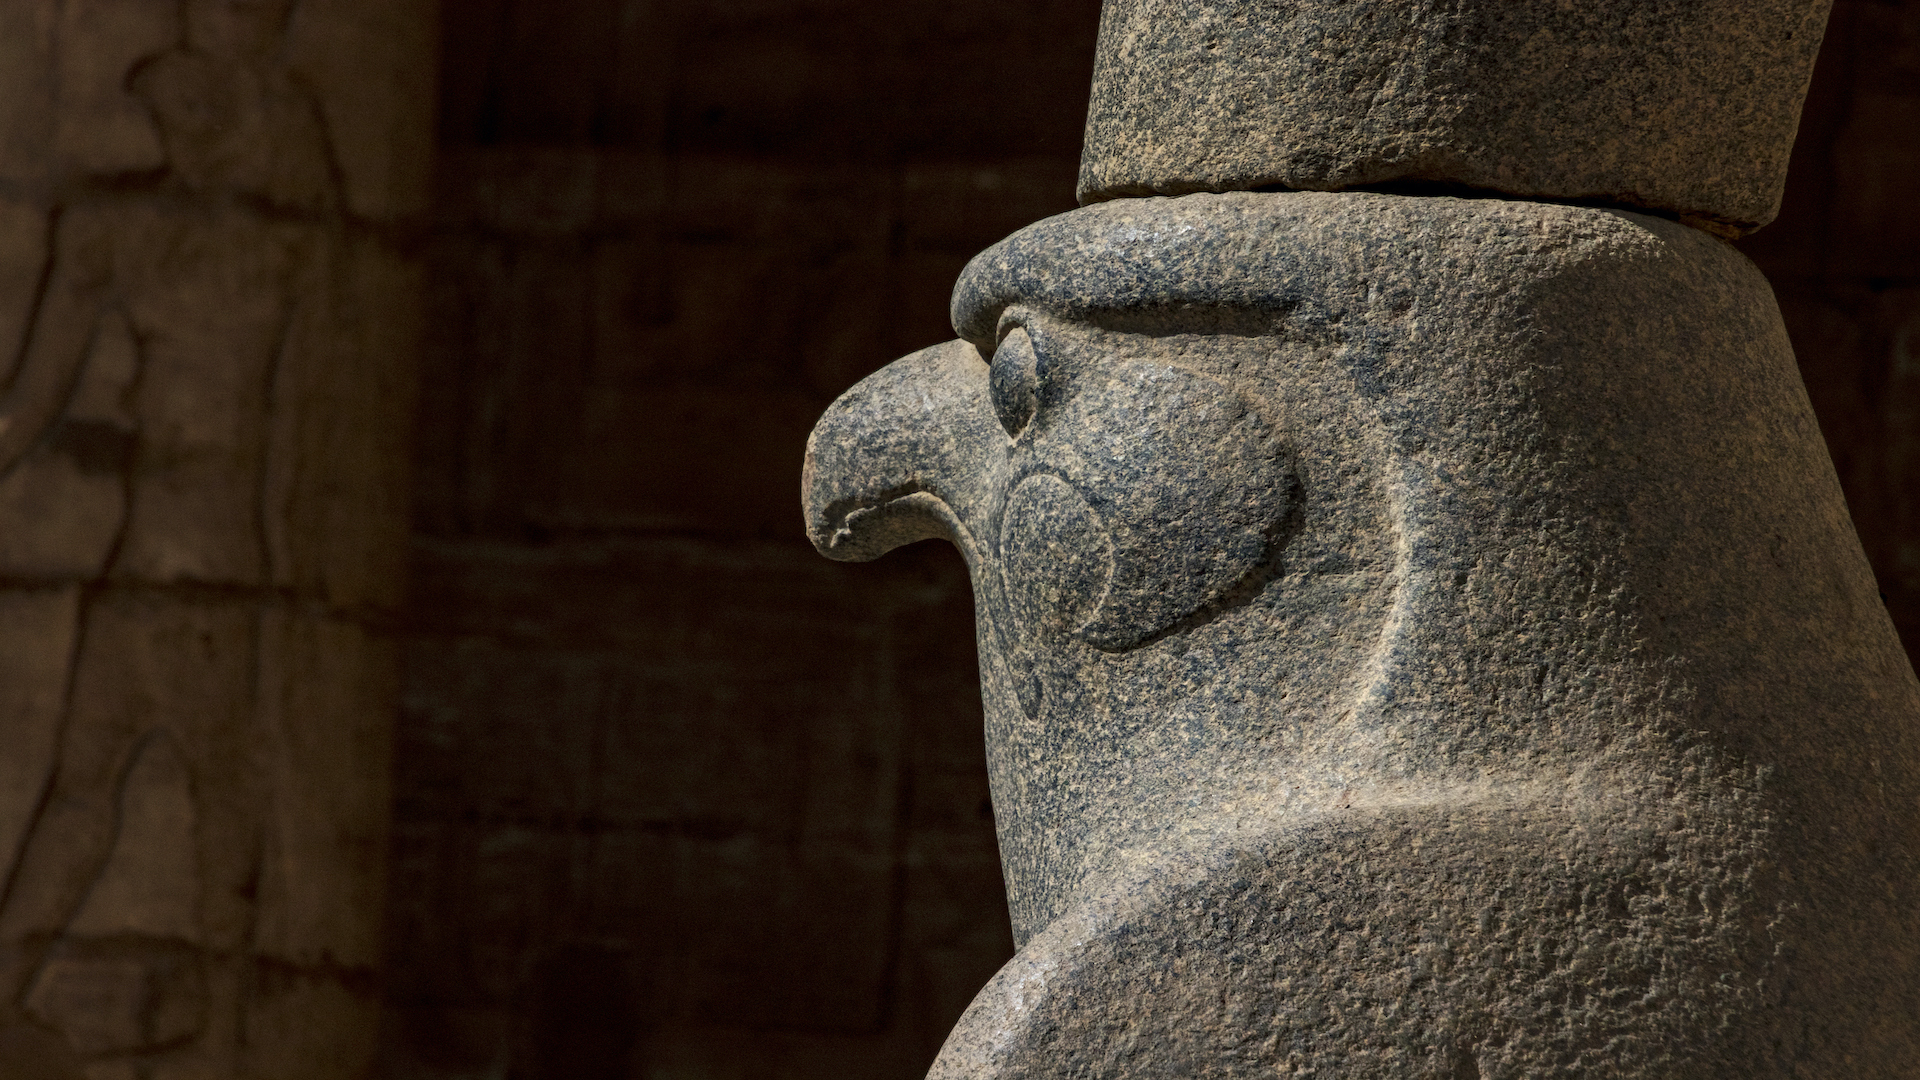 Las imágenes de halcones que se ven en el santuario de halcones en Berenike podrían significar varias deidades. Esta escultura de halcón es de Edfu, una ciudad en el Nilo al sur de Luxor.